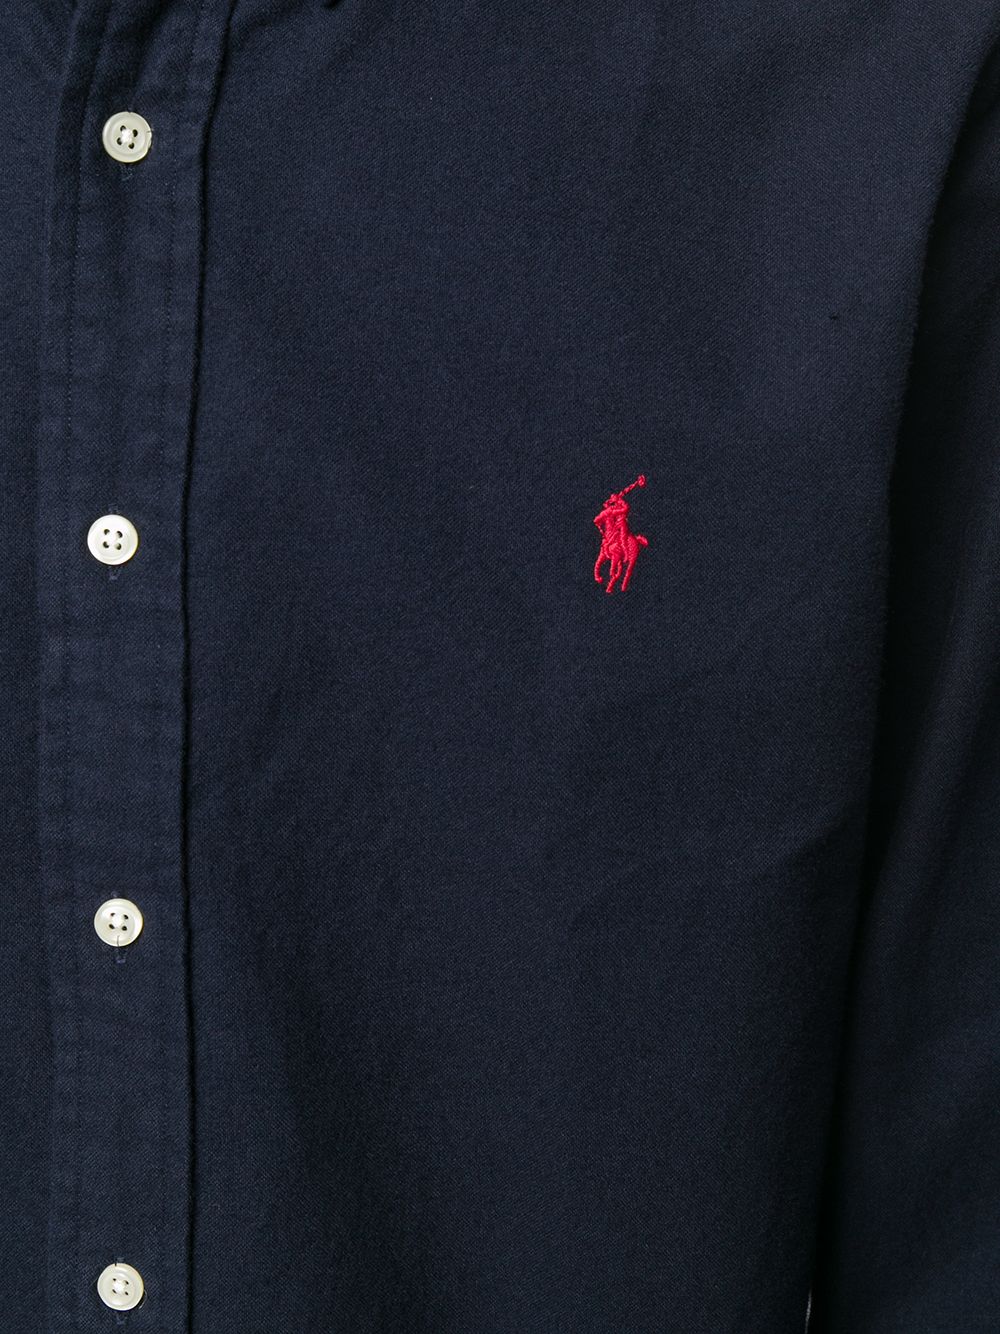 Polo Ralph Lauren, Oxford Sport Shirt